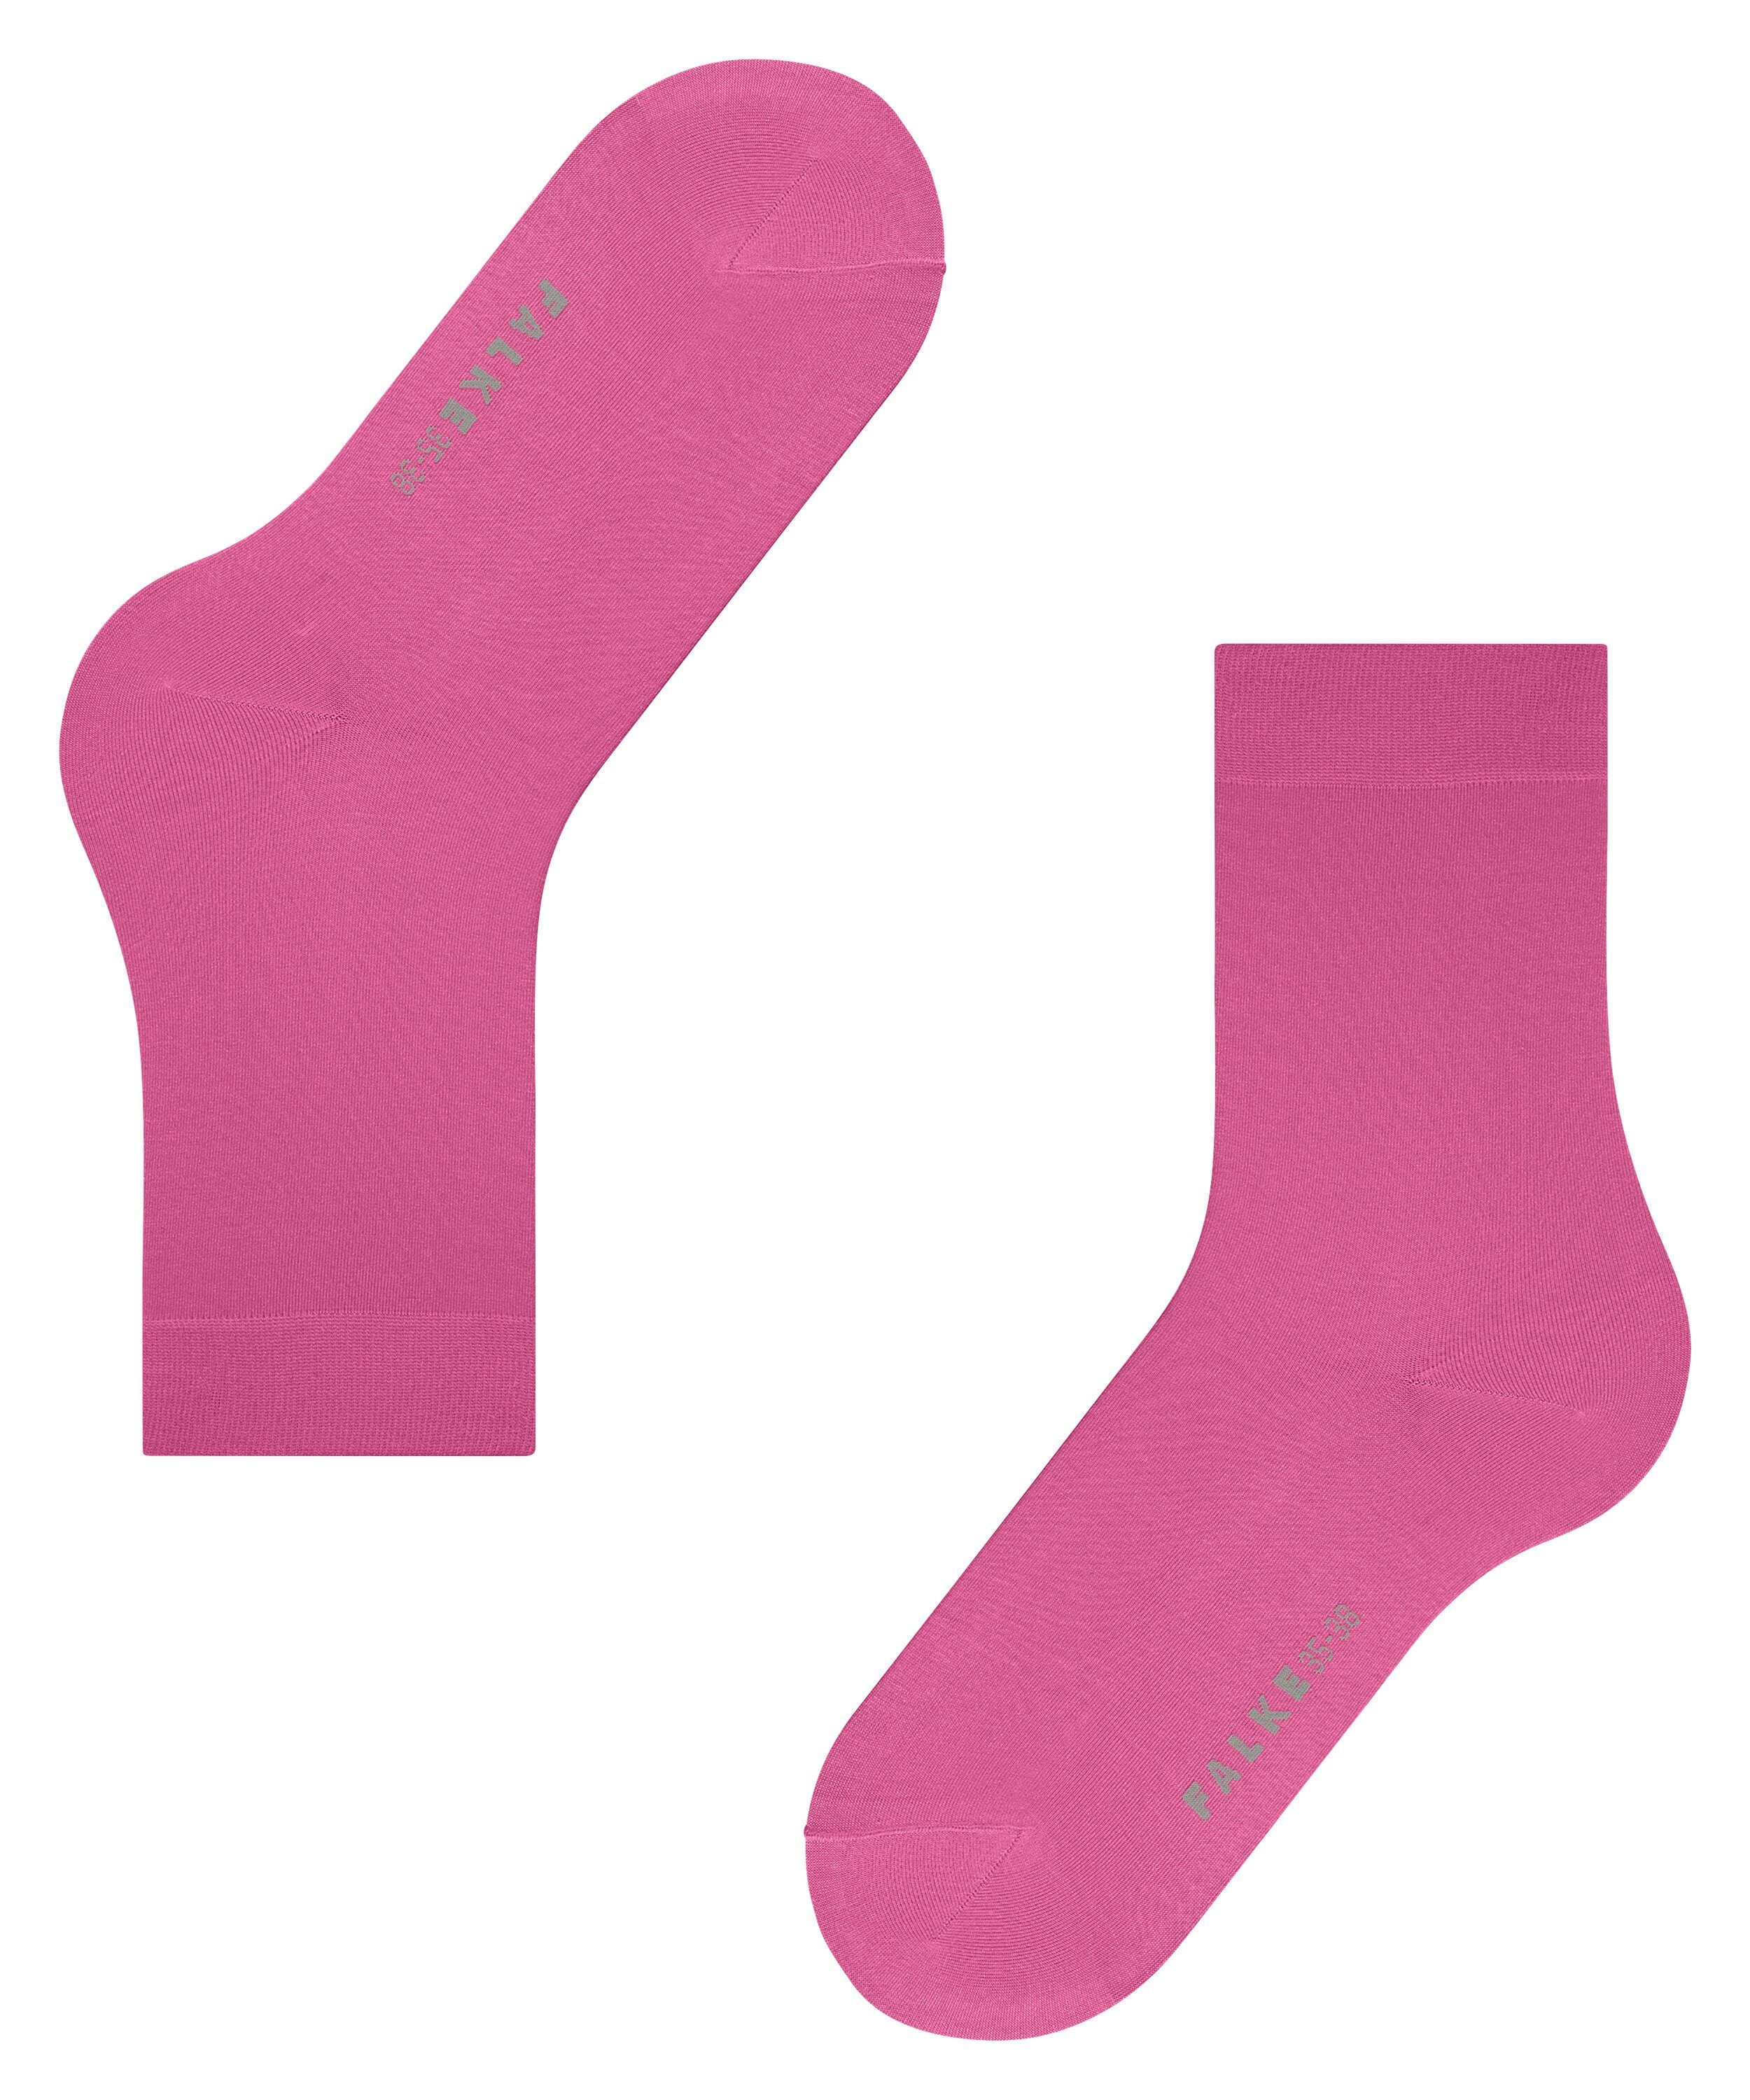 (1-Paar) Touch FALKE (8462) pink Socken Cotton